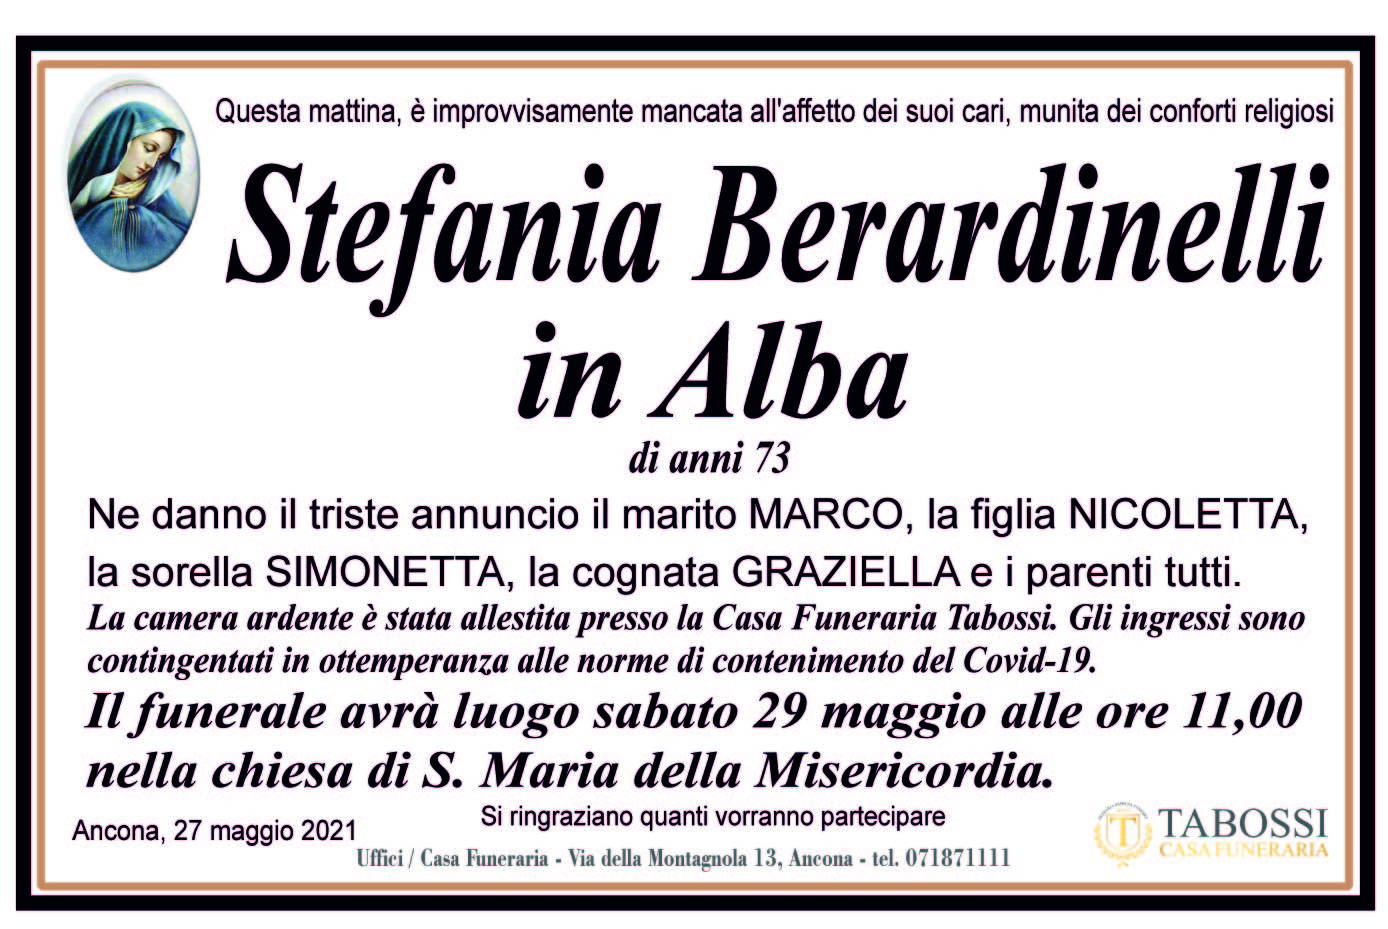 Stefania Berardinelli